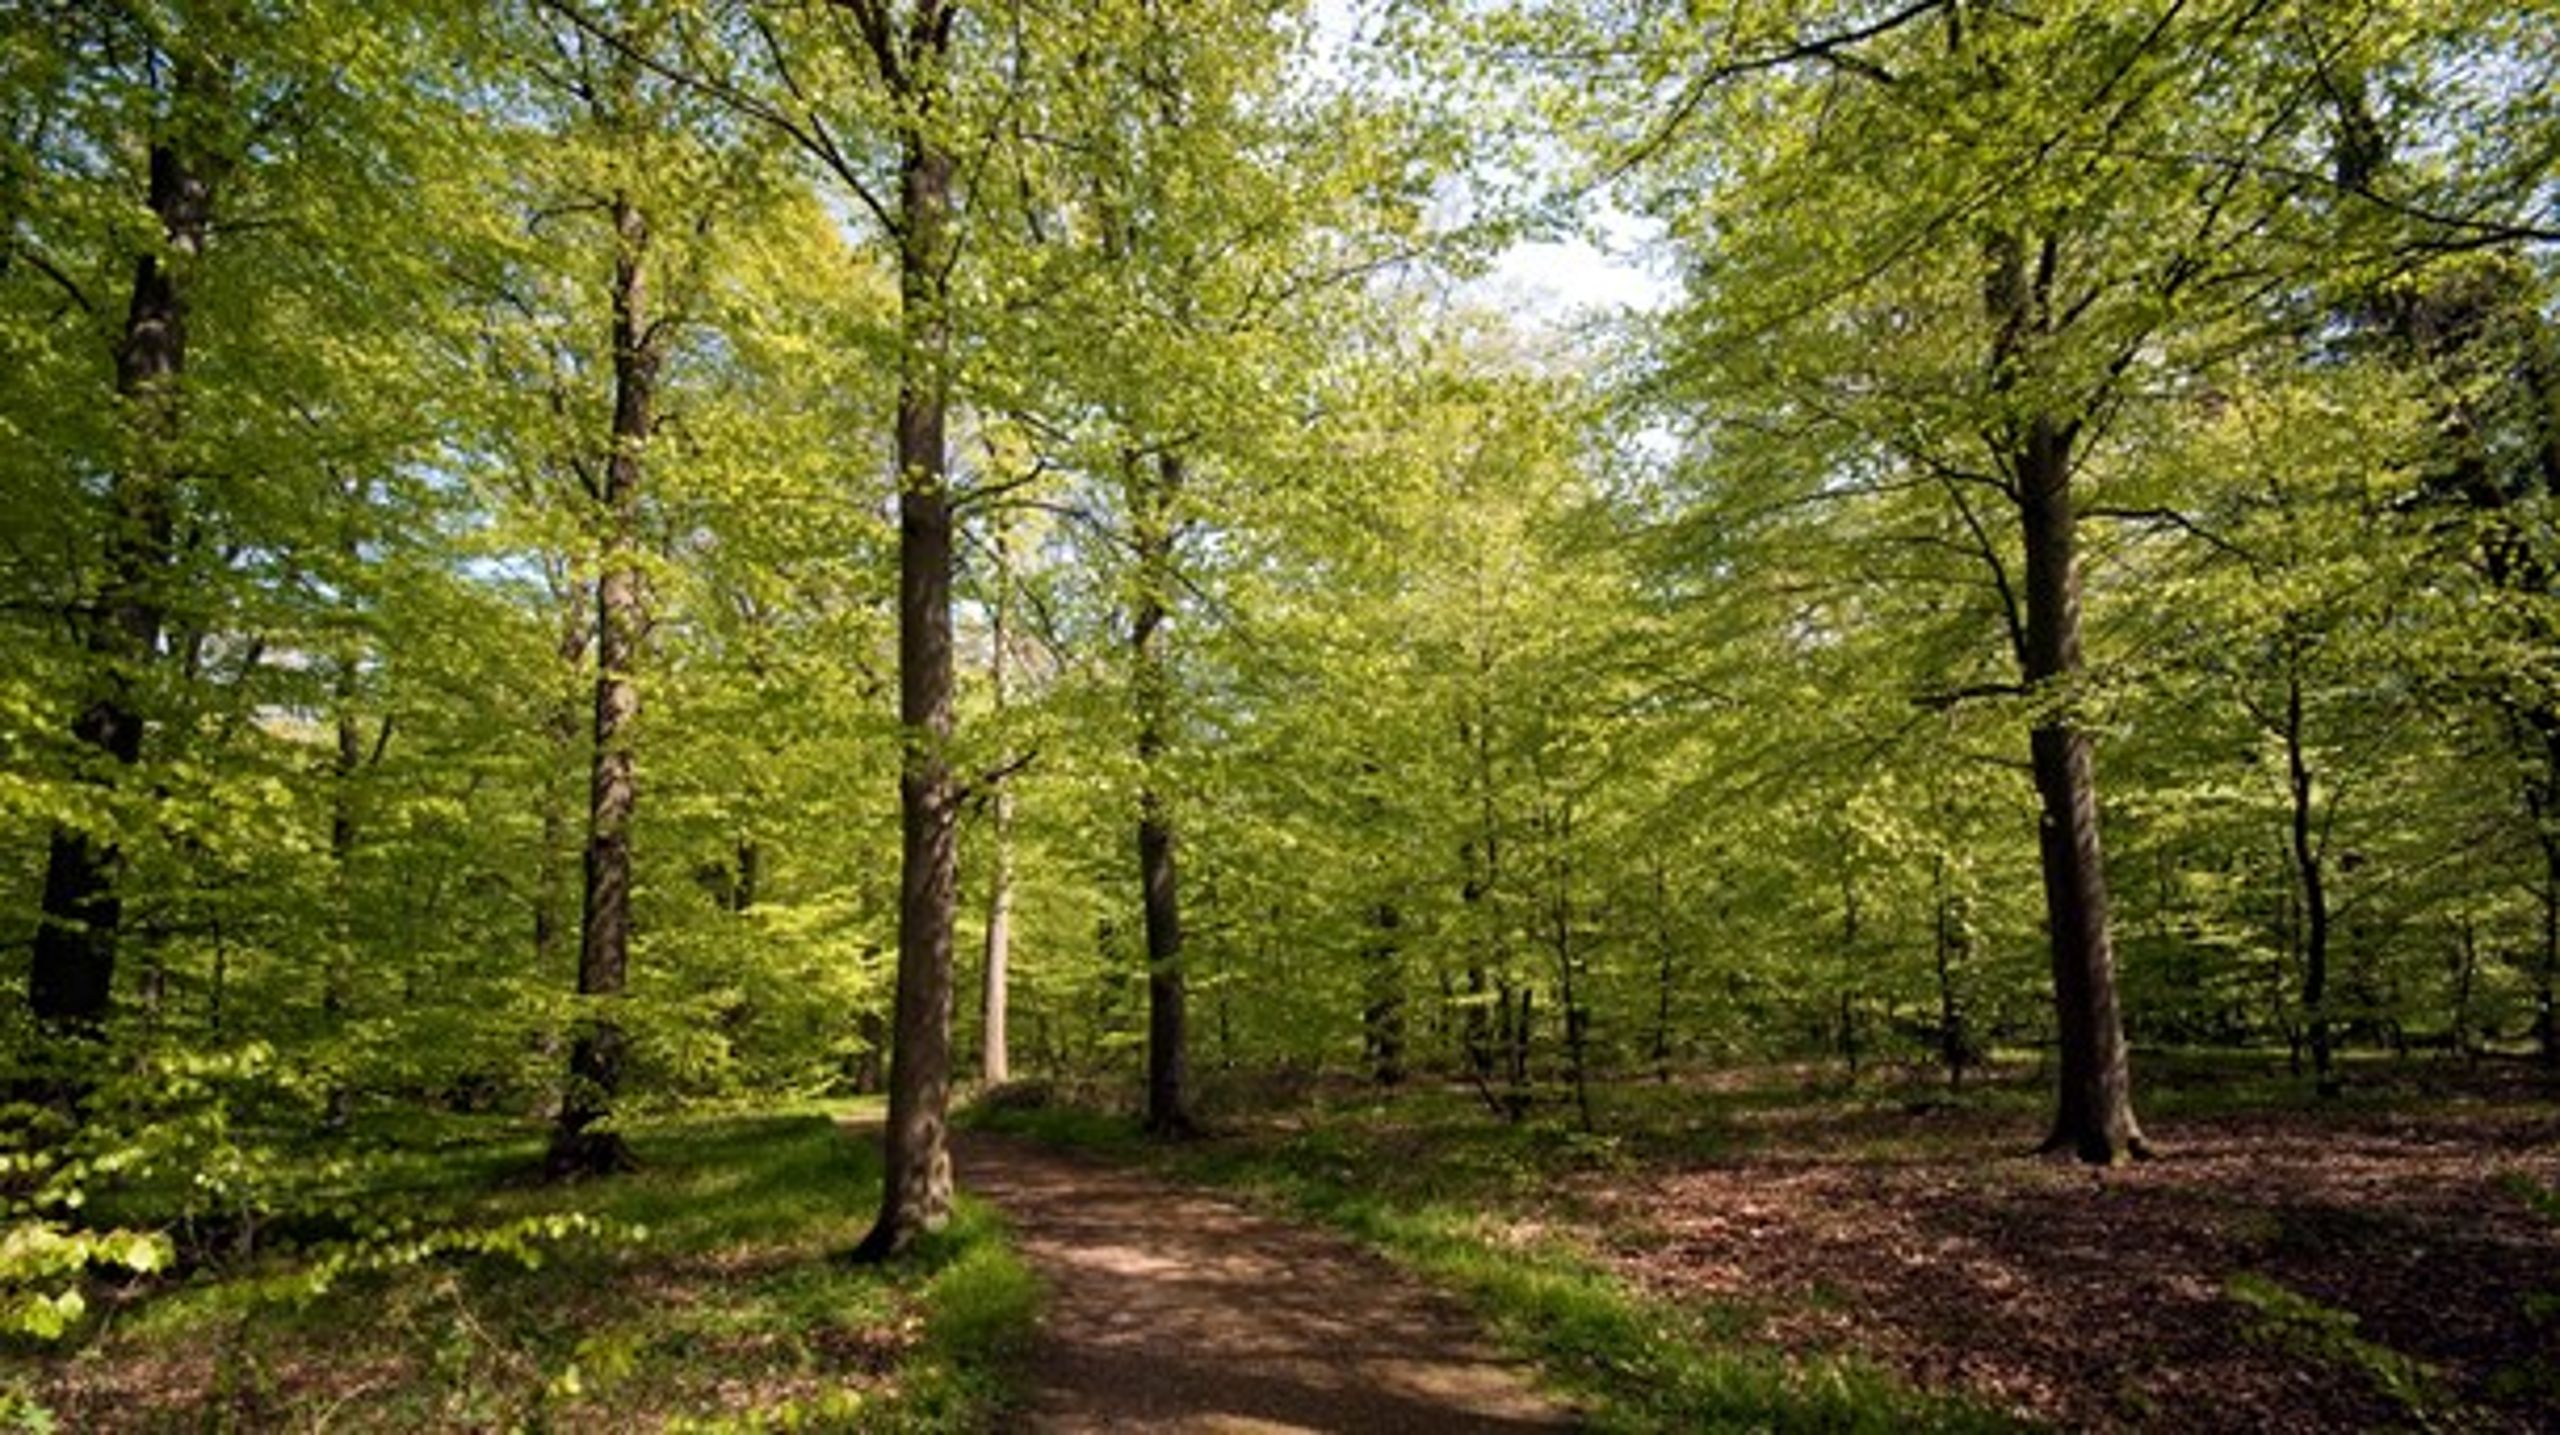 Særligt på skovforvaltning lader Danmarks indsats meget tilbage at ønske. Danmark scorer således kun 16 ud af 42 på dette område, skriver Gry Bossen fra Verdens Skove.